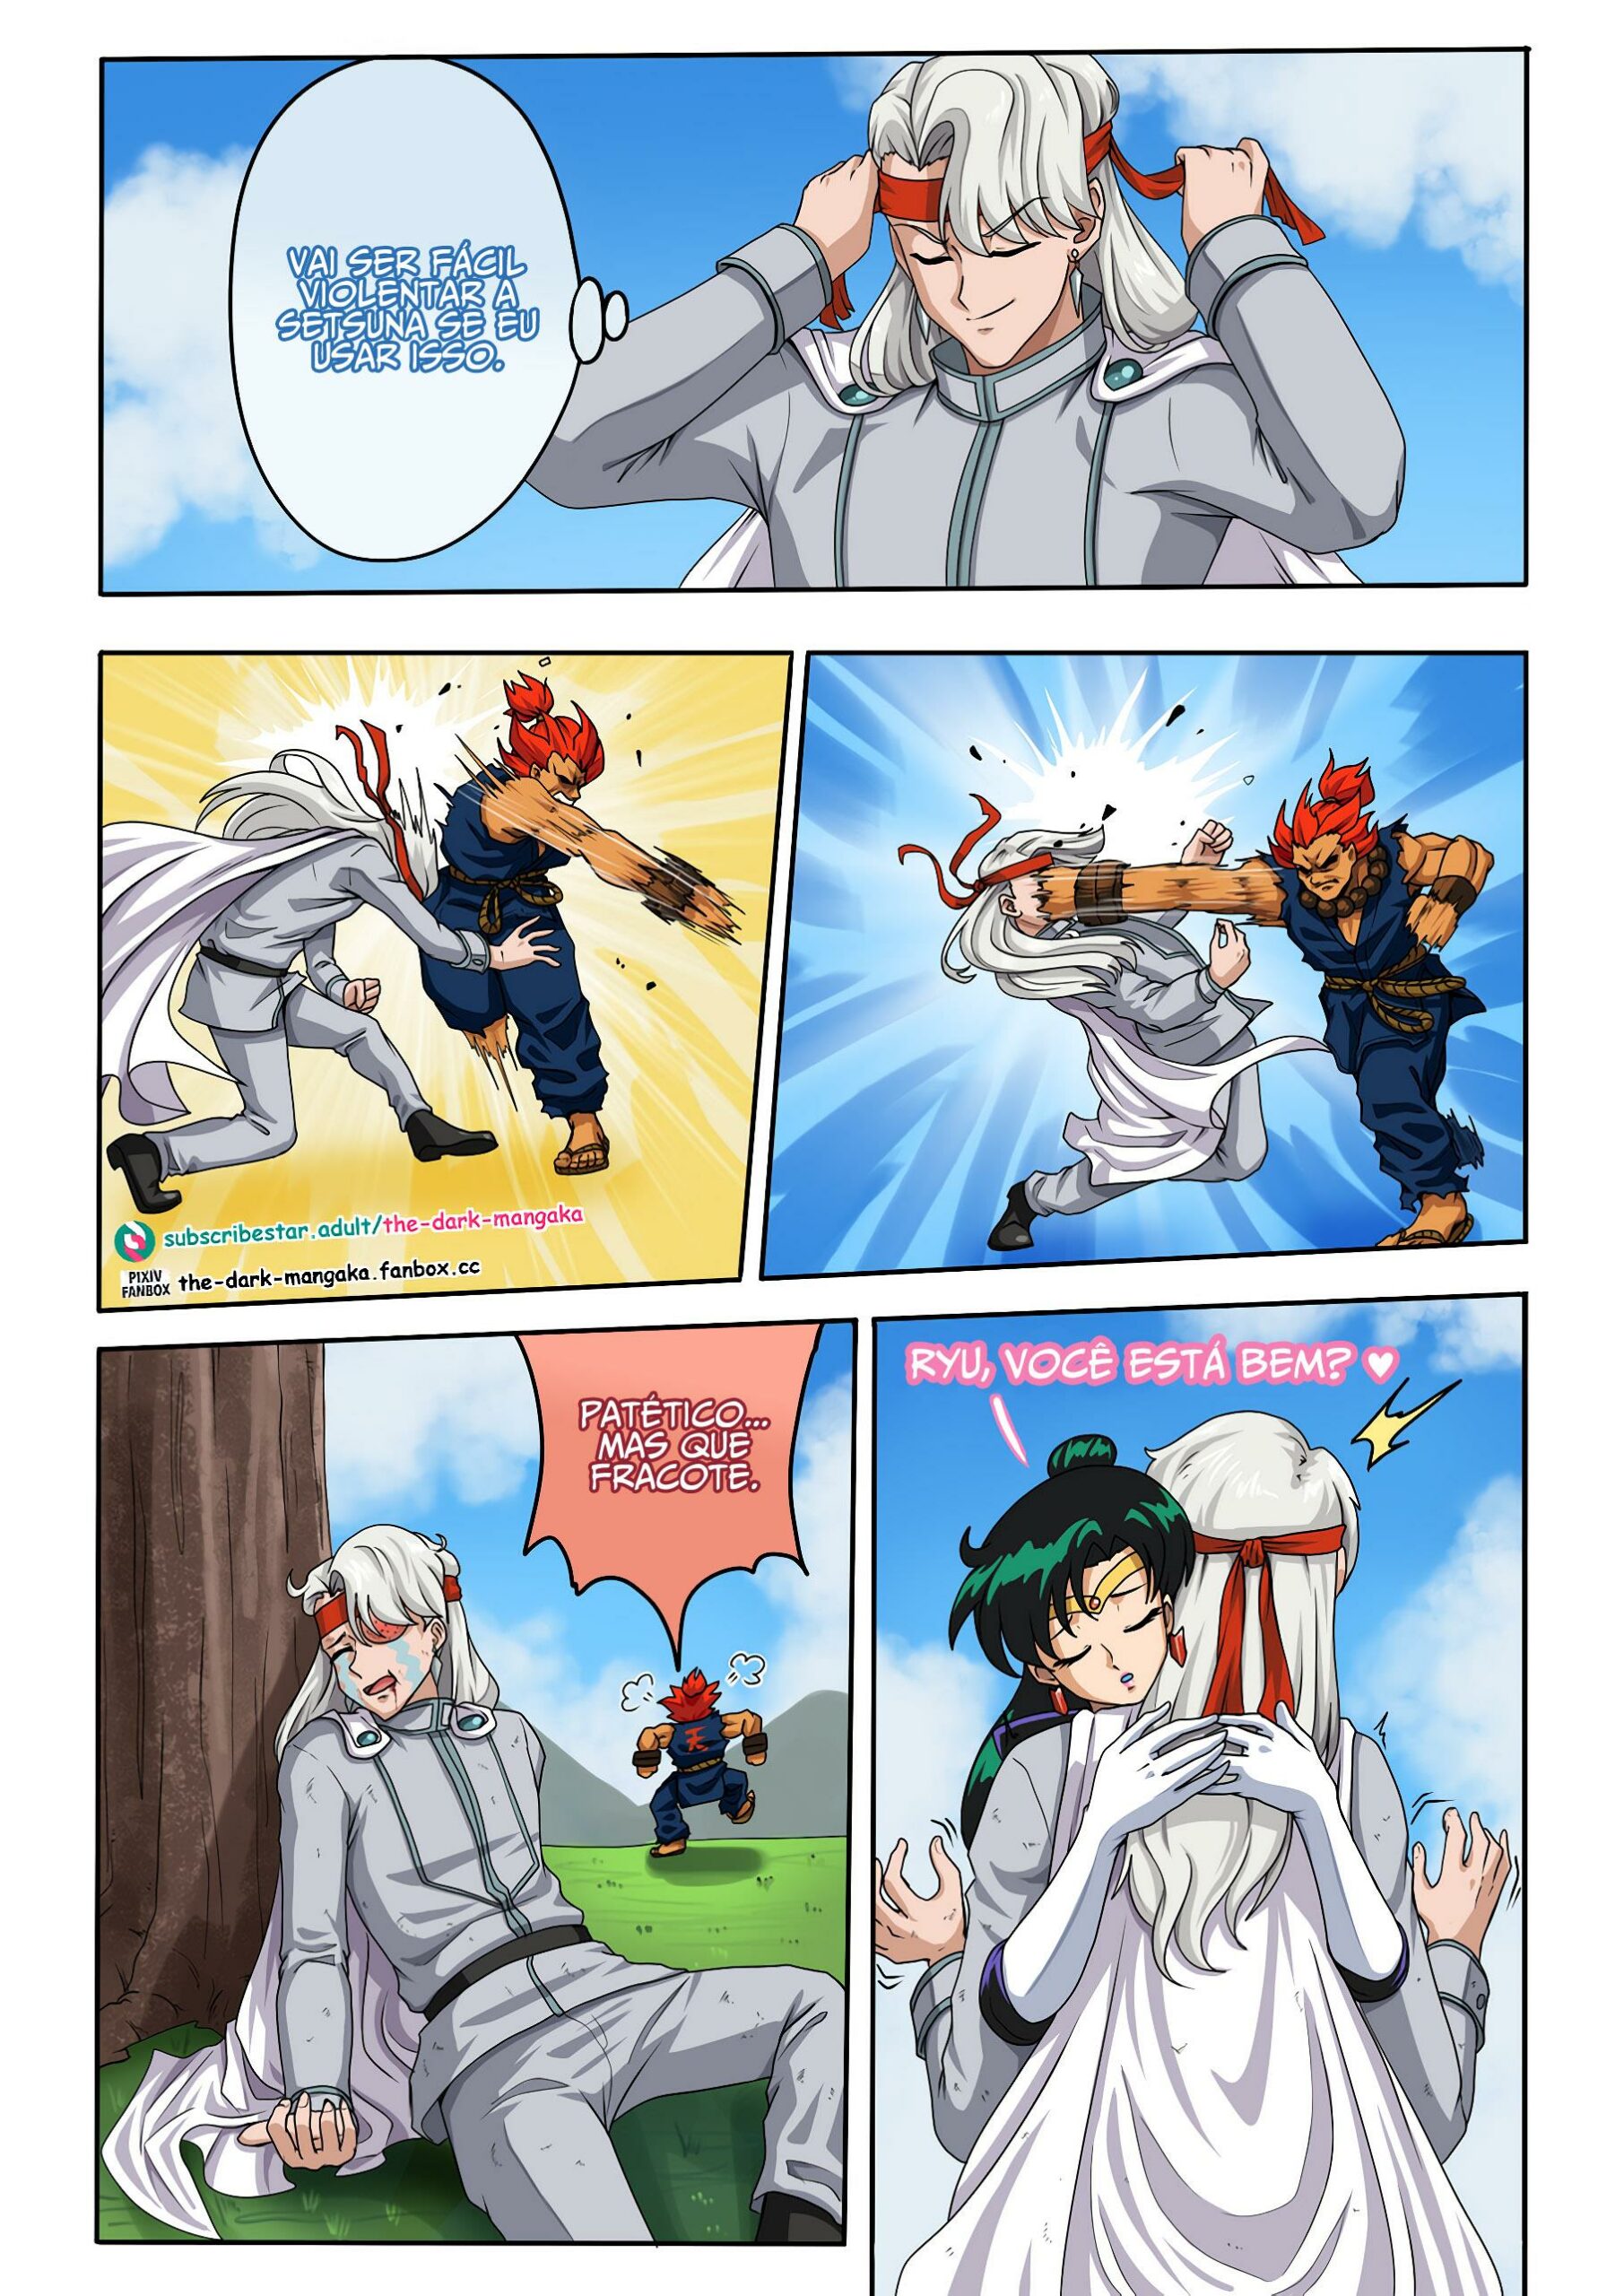 O poder sexual de Ryu